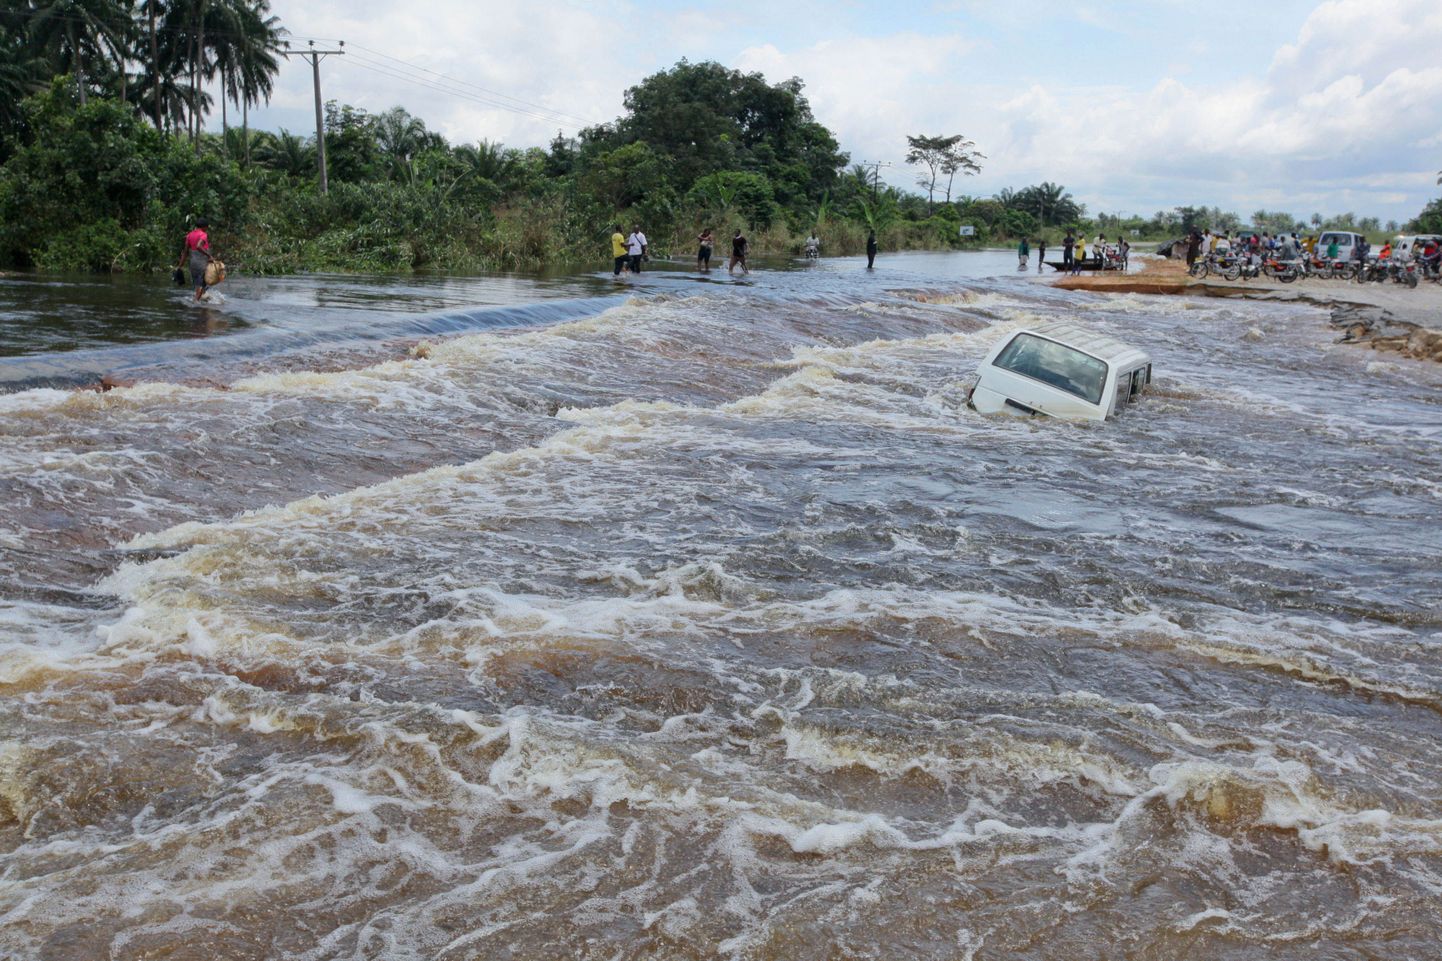 Tulvavesi võimutsemas Patani kogukonnas.